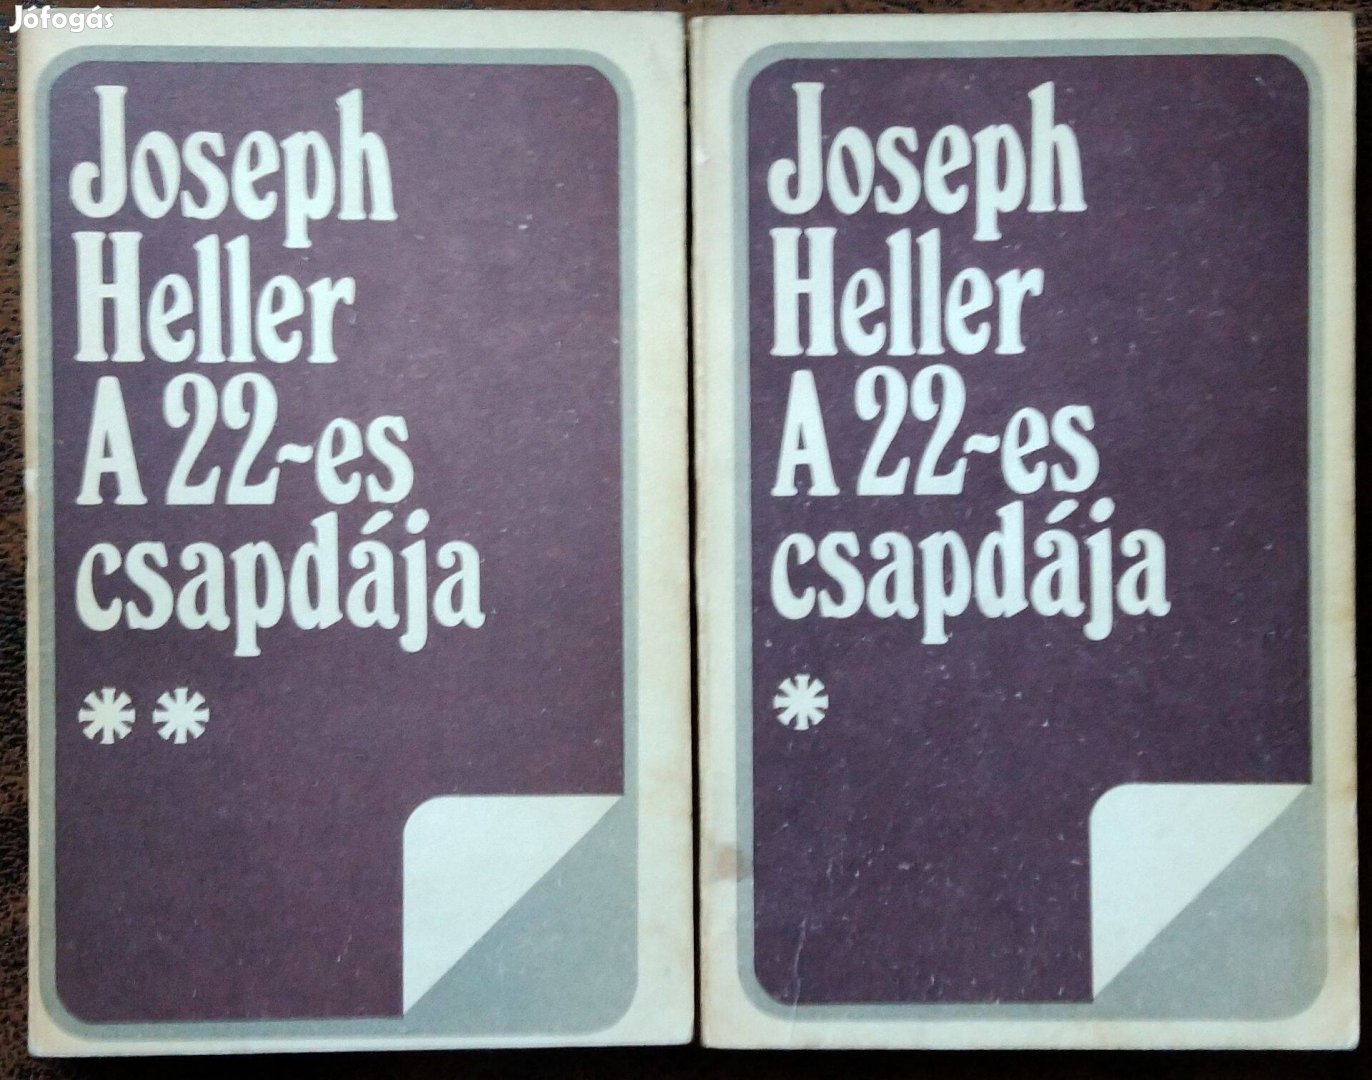 Joseph Heller A 22-es csapdája